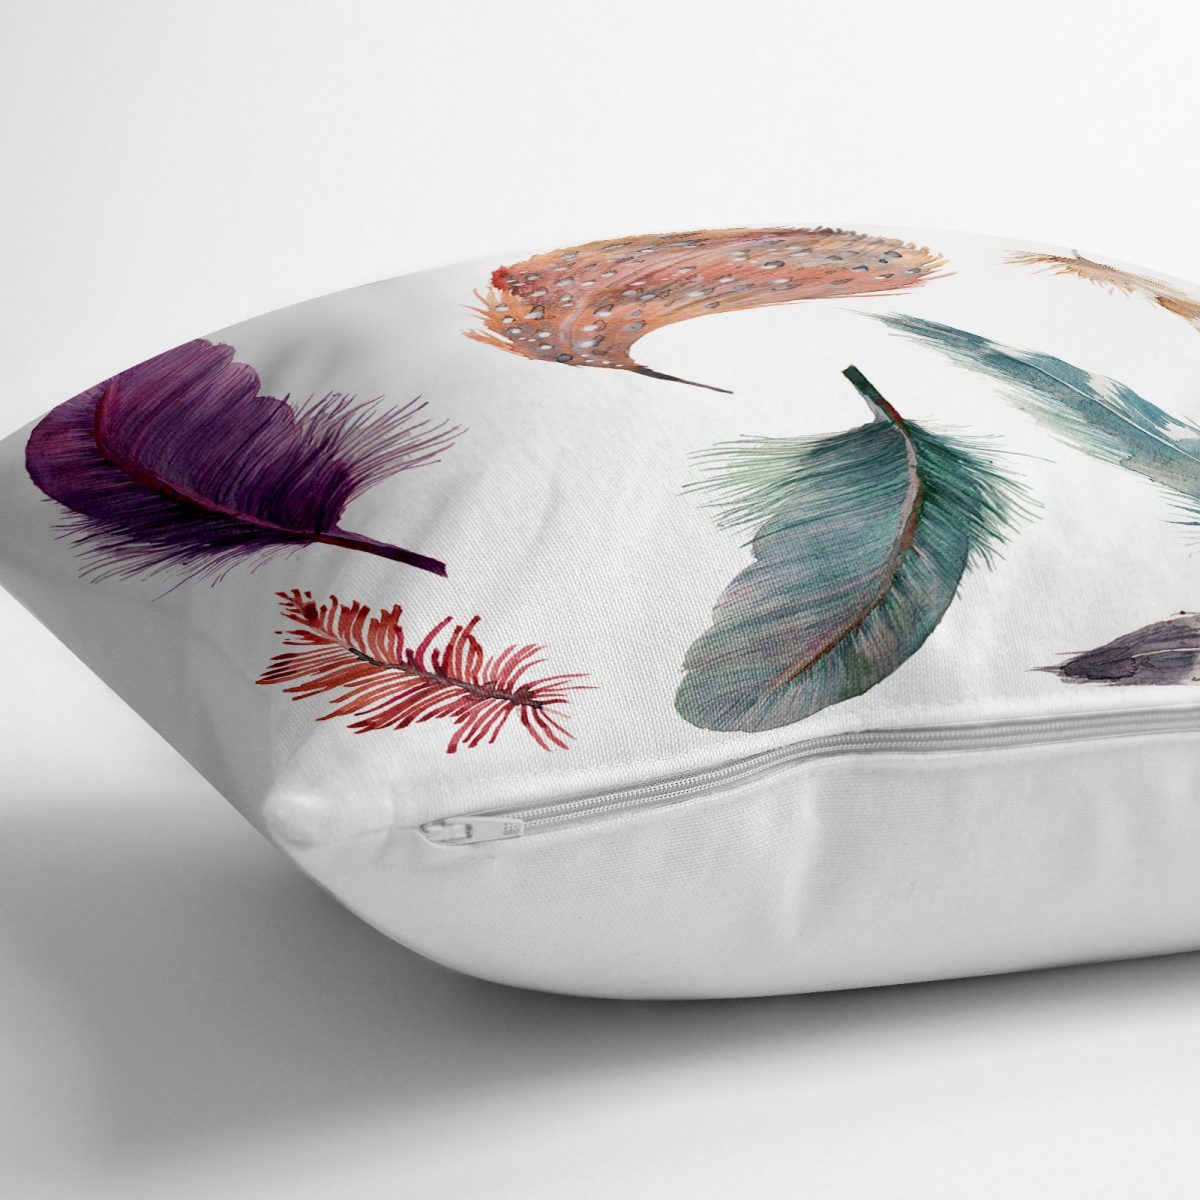 Kuş Tüyü Resimli Dijital Baskılı Dekoratif Yer Minderi - 70 x 70 cm Realhomes